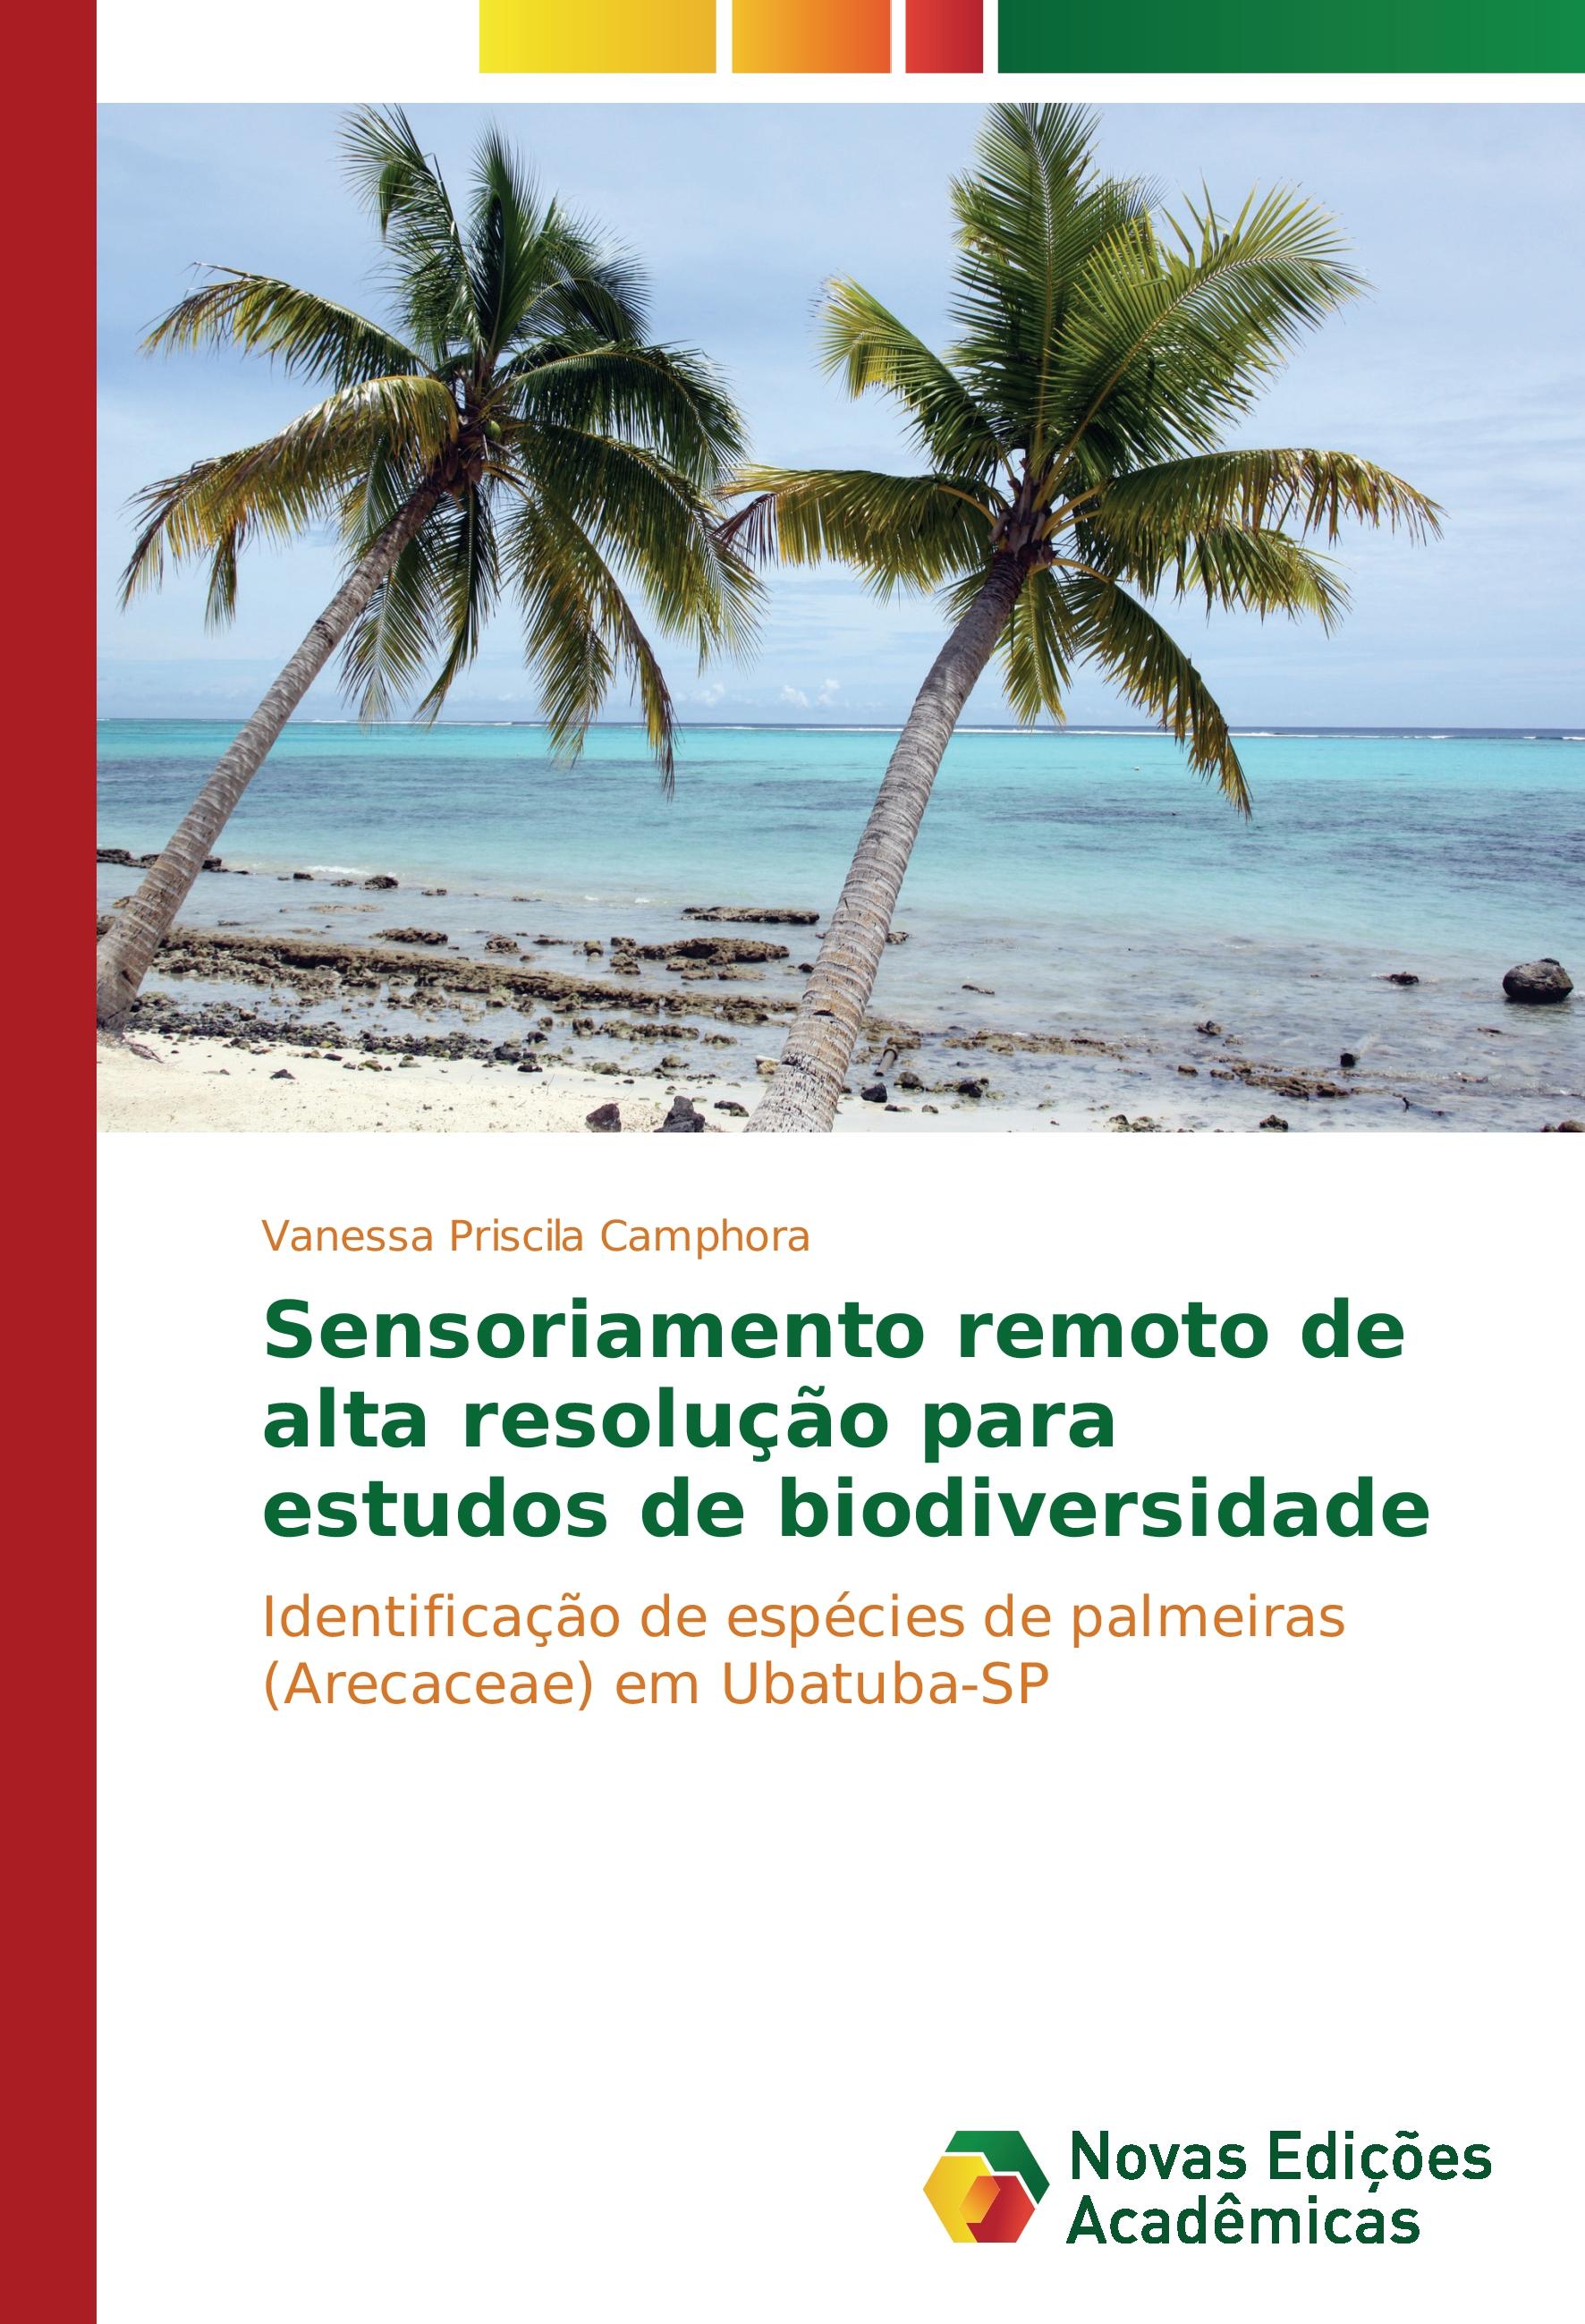 Sensoriamento remoto de alta resolução para estudos de biodiversidade - Vanessa Priscila Camphora